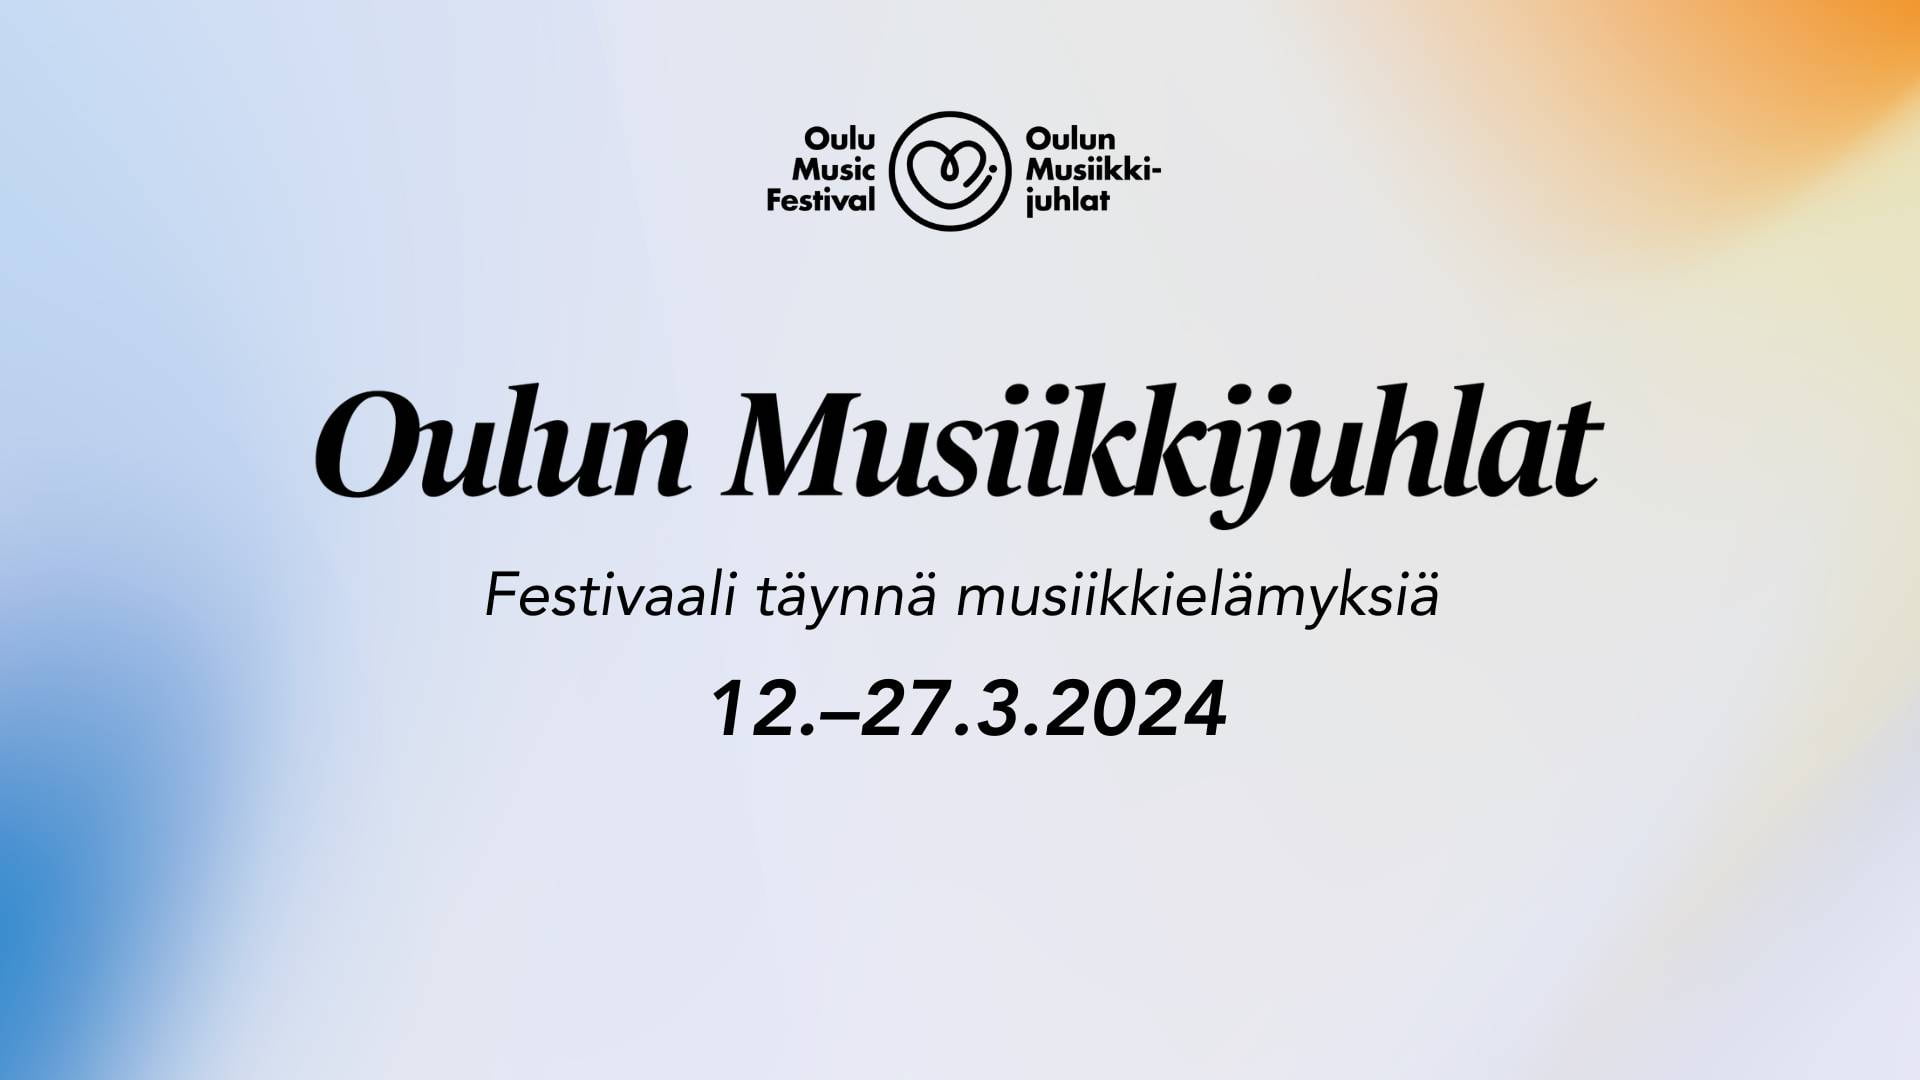 Oulun Musiikkijuhlat: Festivaali täynnä musiikkielämyksiä 12.-27.3.2024